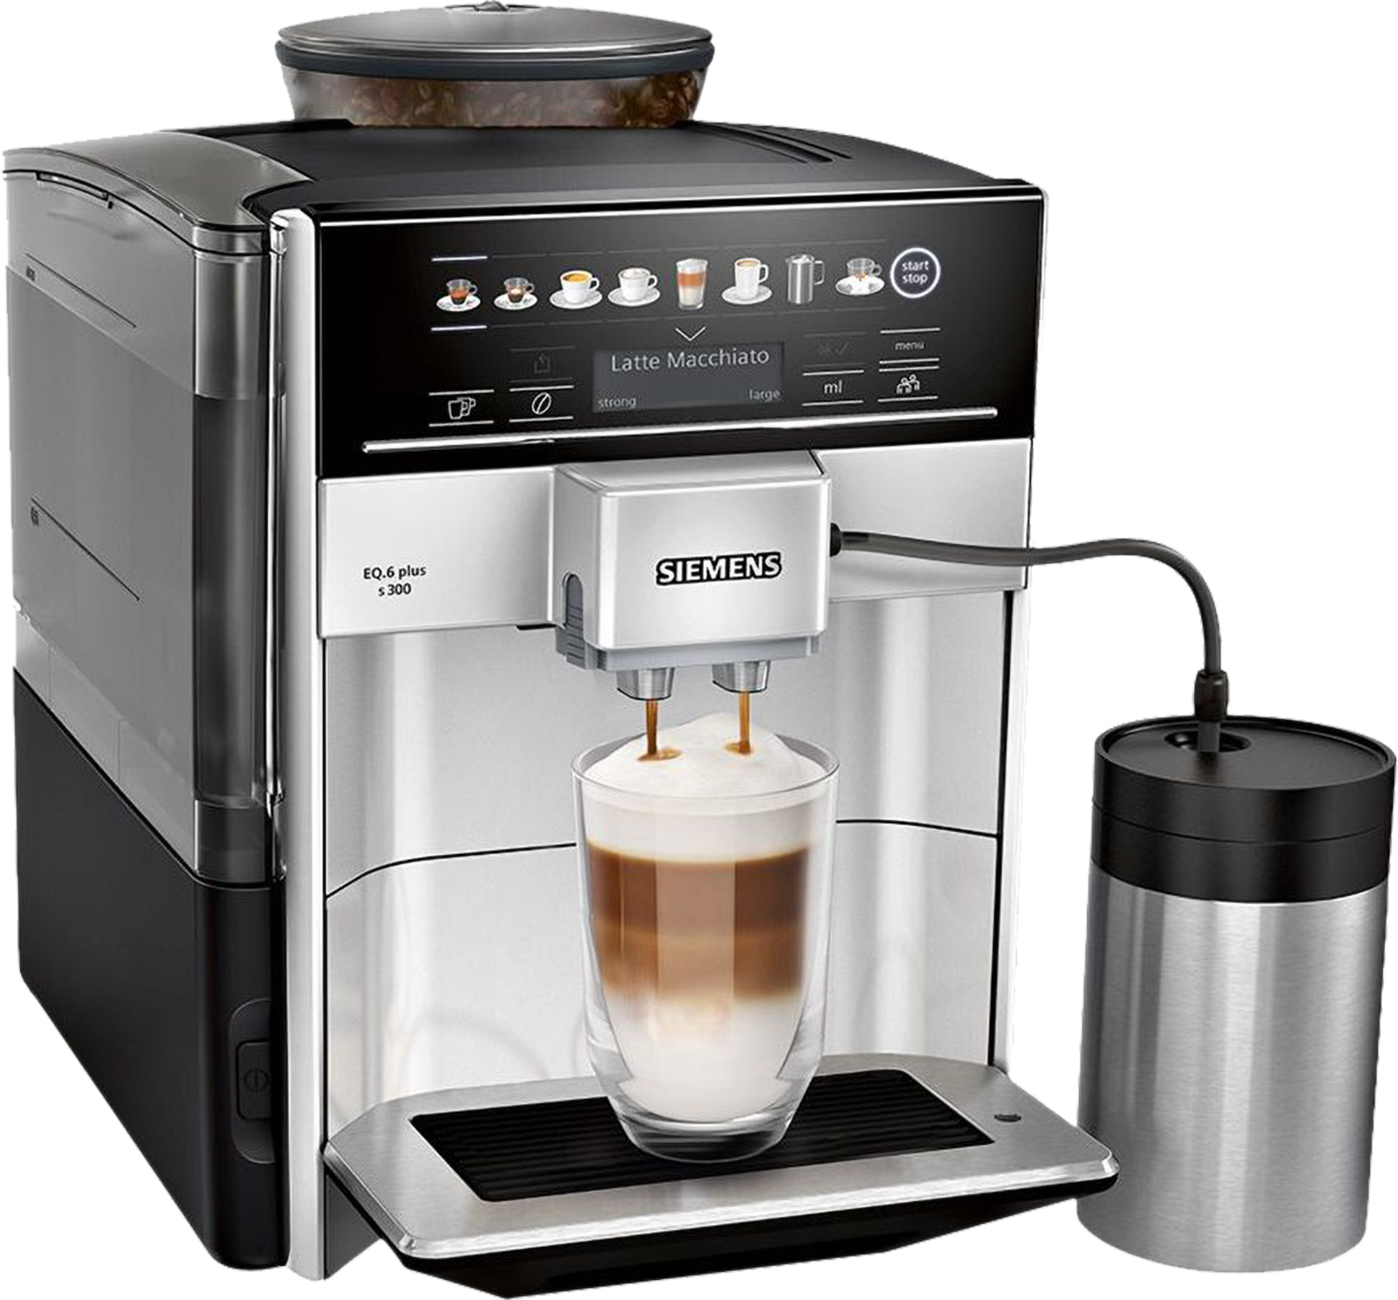 Siemens TE653M11RW | Silber | Kaffeevollautomat | 15 bar | 1,7 Liter Abnehmbarer Wassertank | 300g Kaffeebohnenbeh?lter | 1500 Watt von Siemens